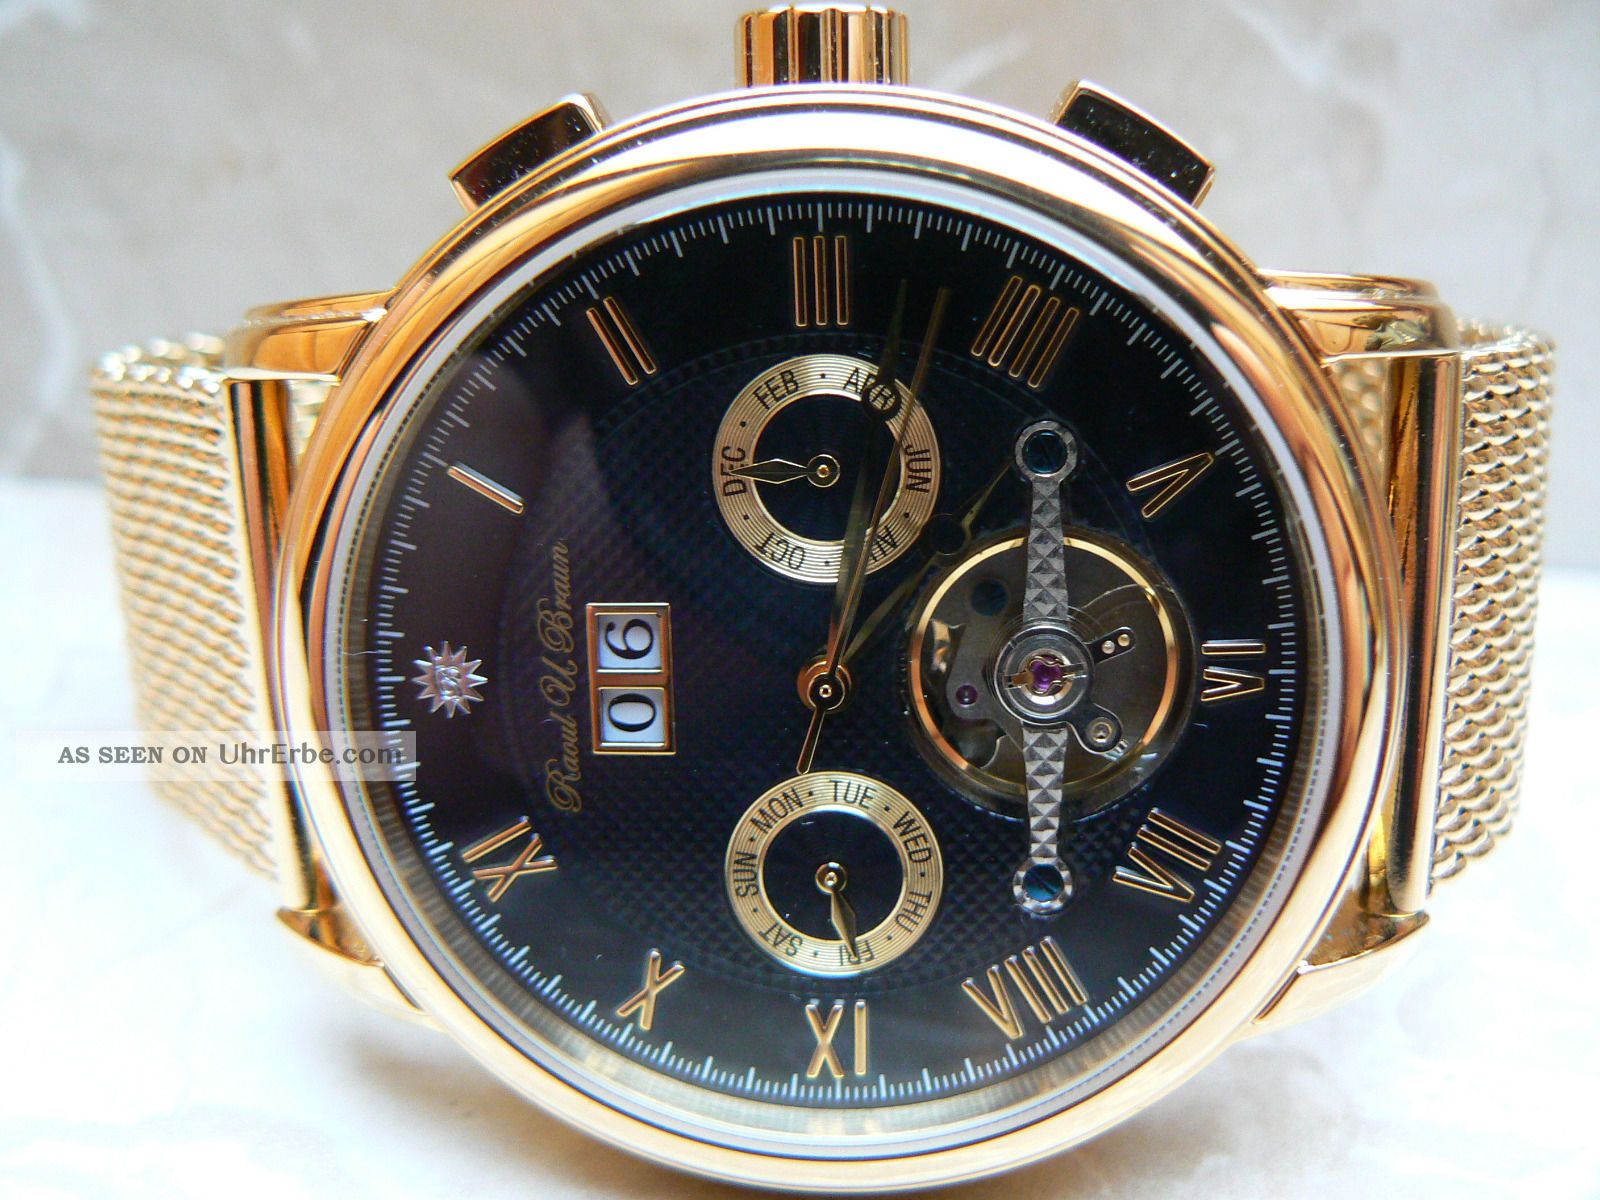 Raoul U.  Braun Rub 05 - 0188 Automatikuhr Ip - Vergoldet Chronograph Edelstahl Uhr Armbanduhren Bild